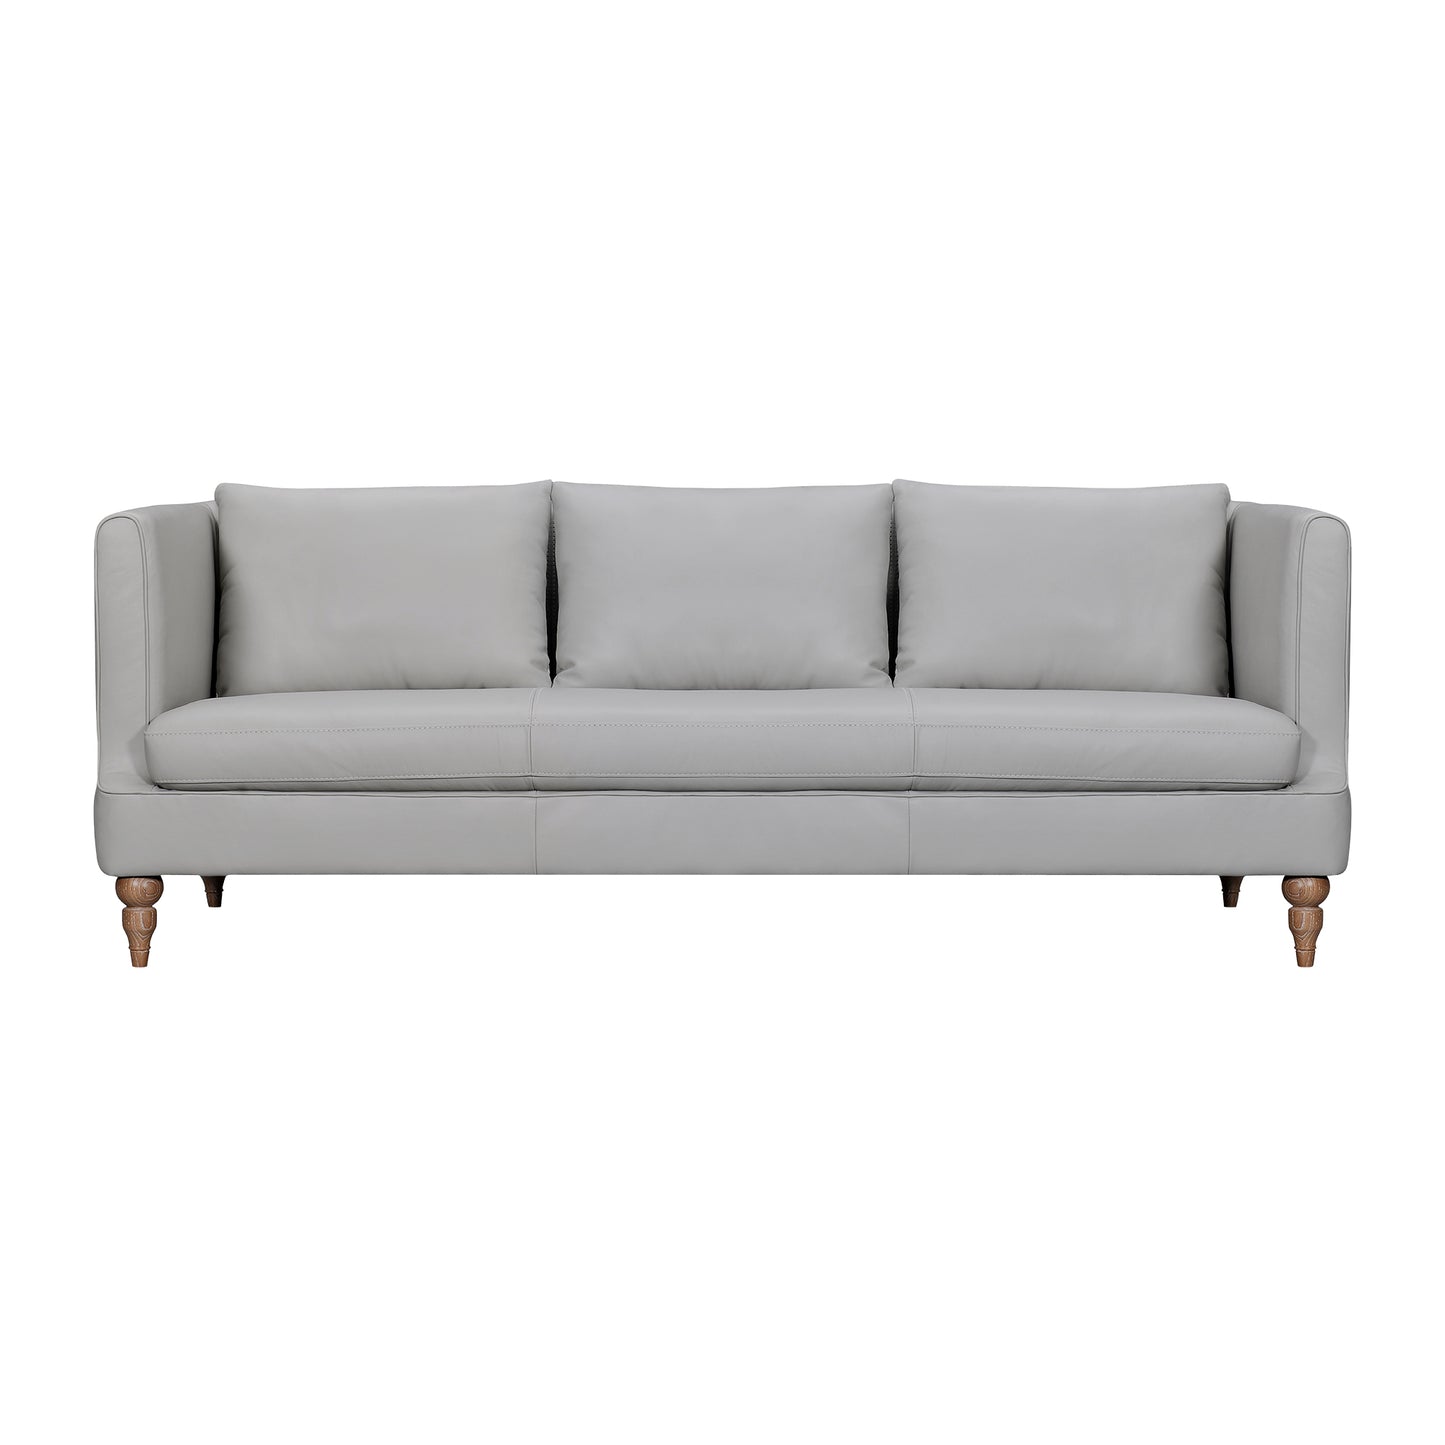 Vincenza 85" Dove Gray Leather Sofa